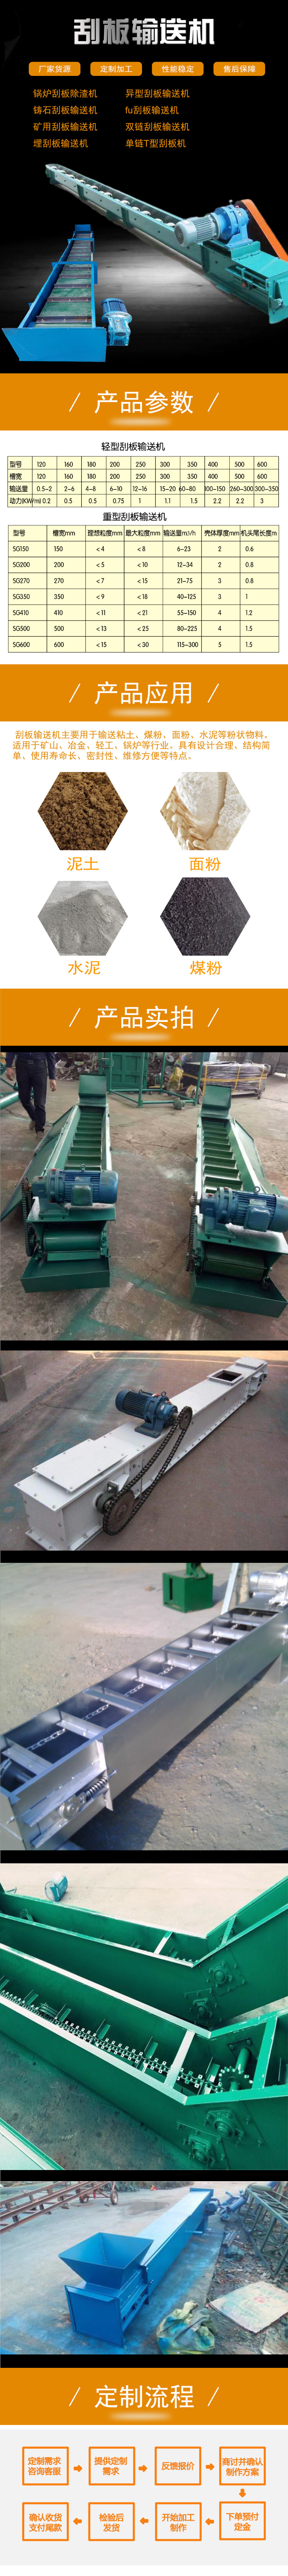 山东矿机刮板输送机 吊挂式刮板输送机 埋刮板输送机的储存